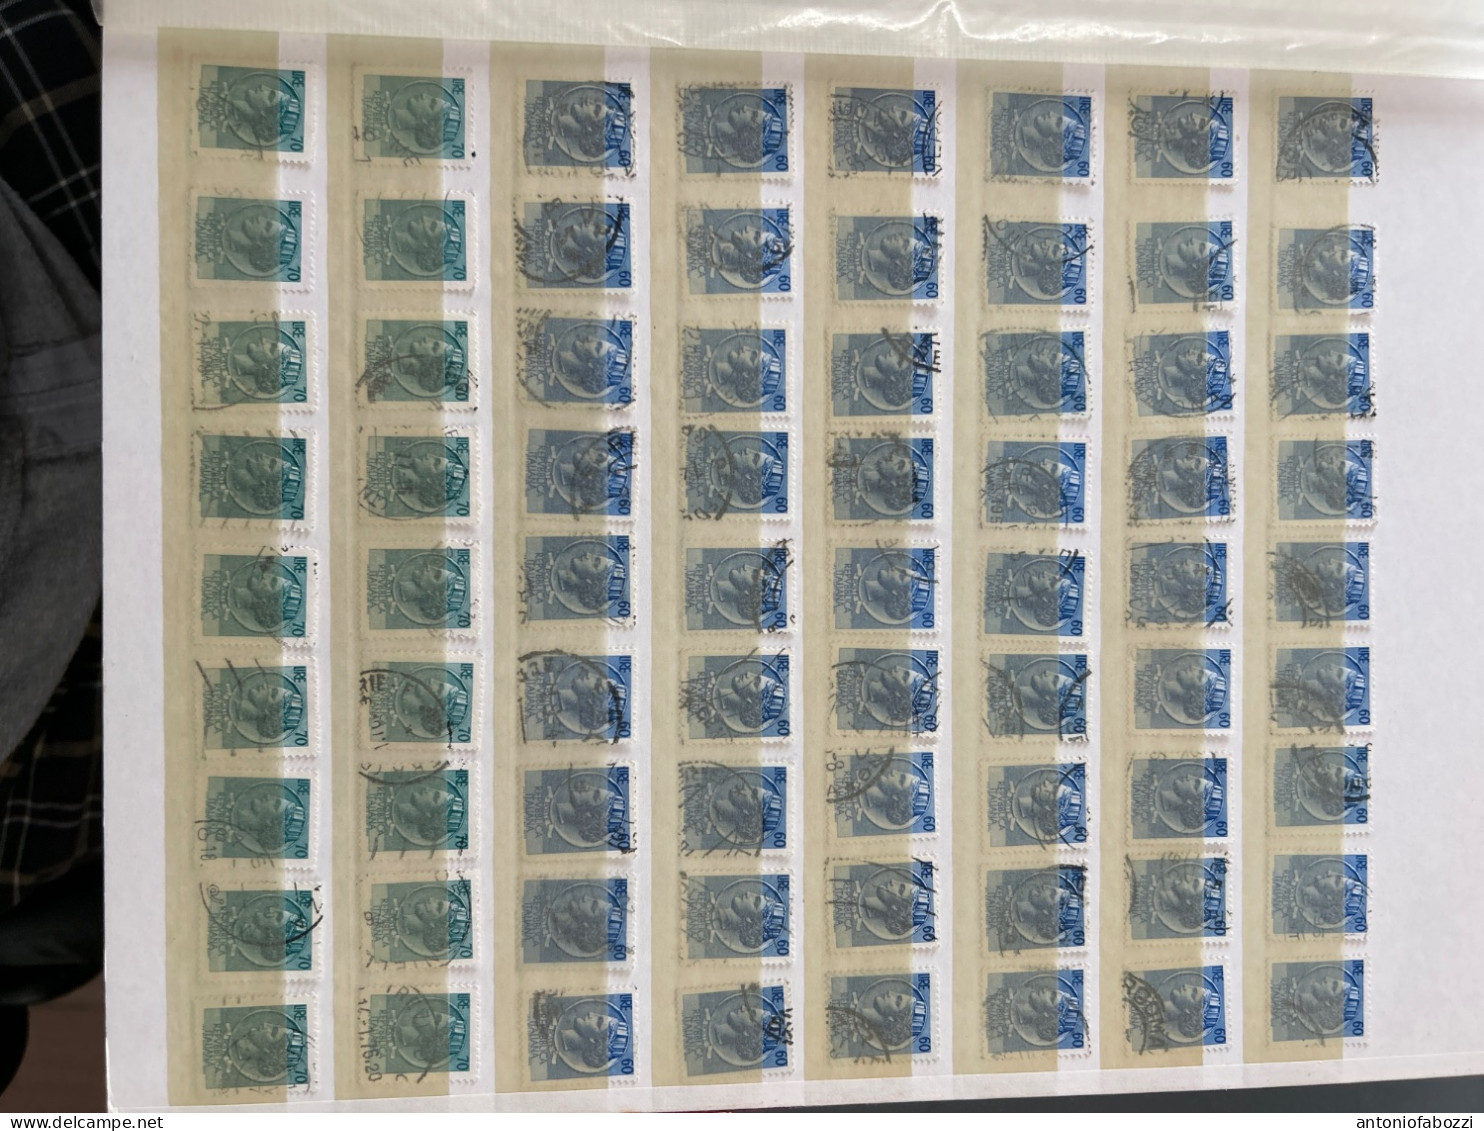 Interessante accumulo di centinaia di francobolli usati Serie Antica moneta siracusana in ottimo stato (vedi foto)